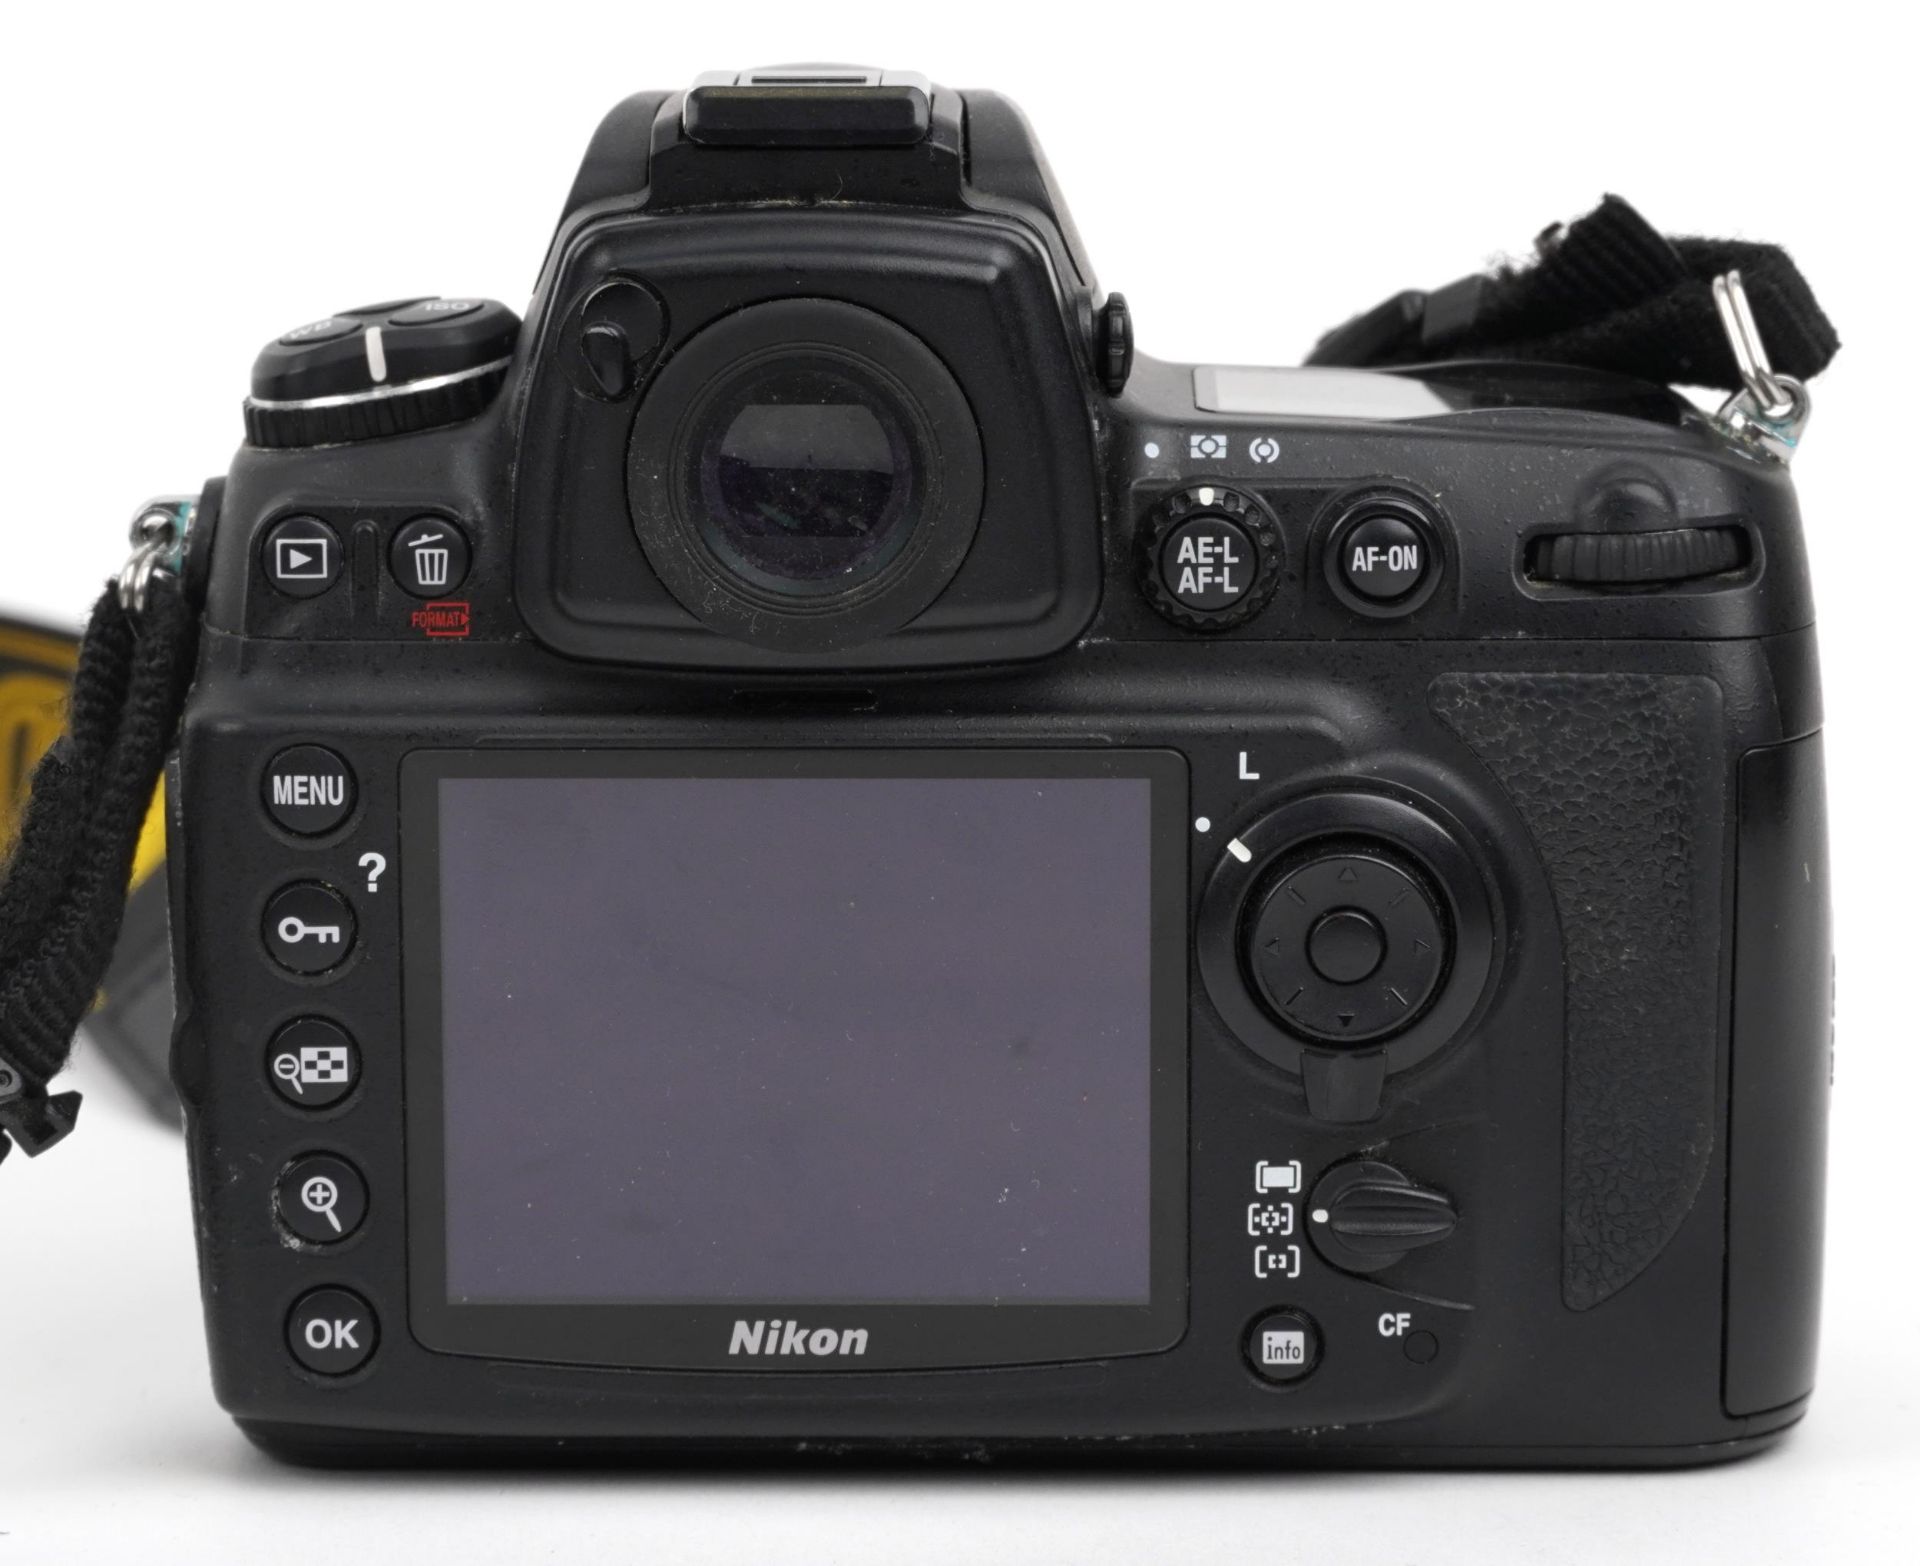 Nikon D700 camera outfit including Nikon SWM VR ED IF 67 and Nikon AF-S Nikor 24-120mm lenses : - Image 5 of 5